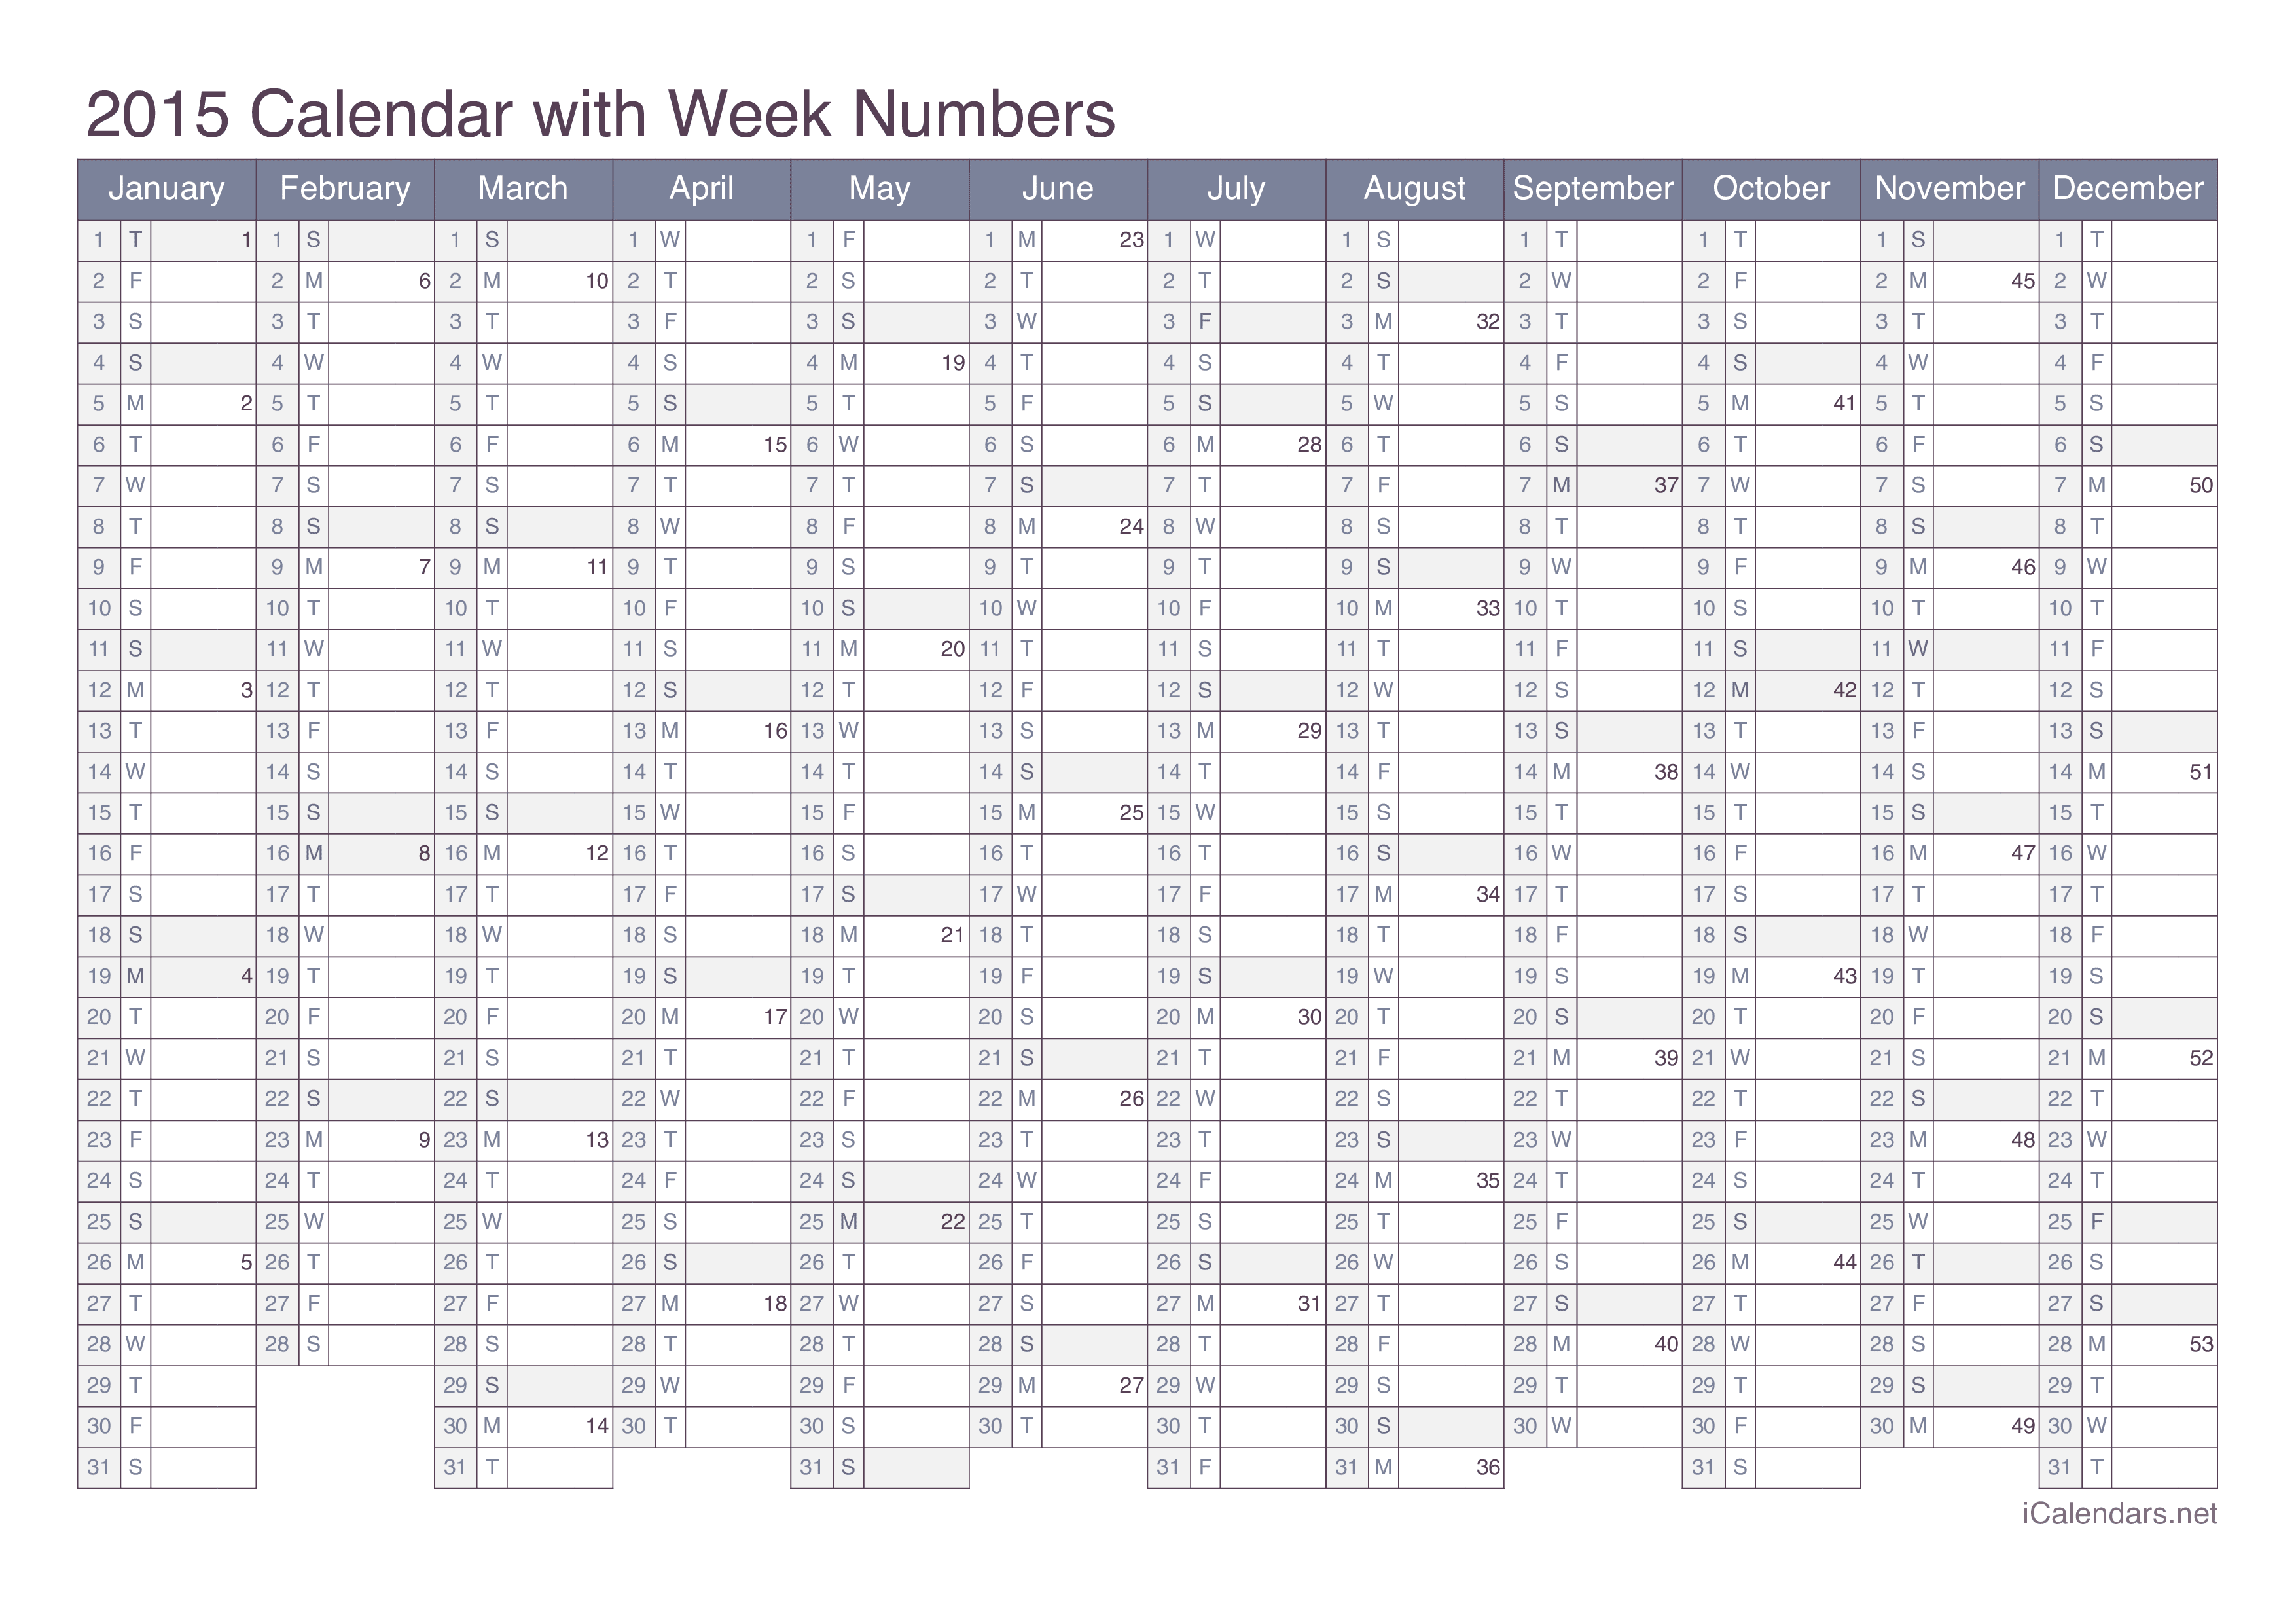 2015 Calendar with week numbers - Office